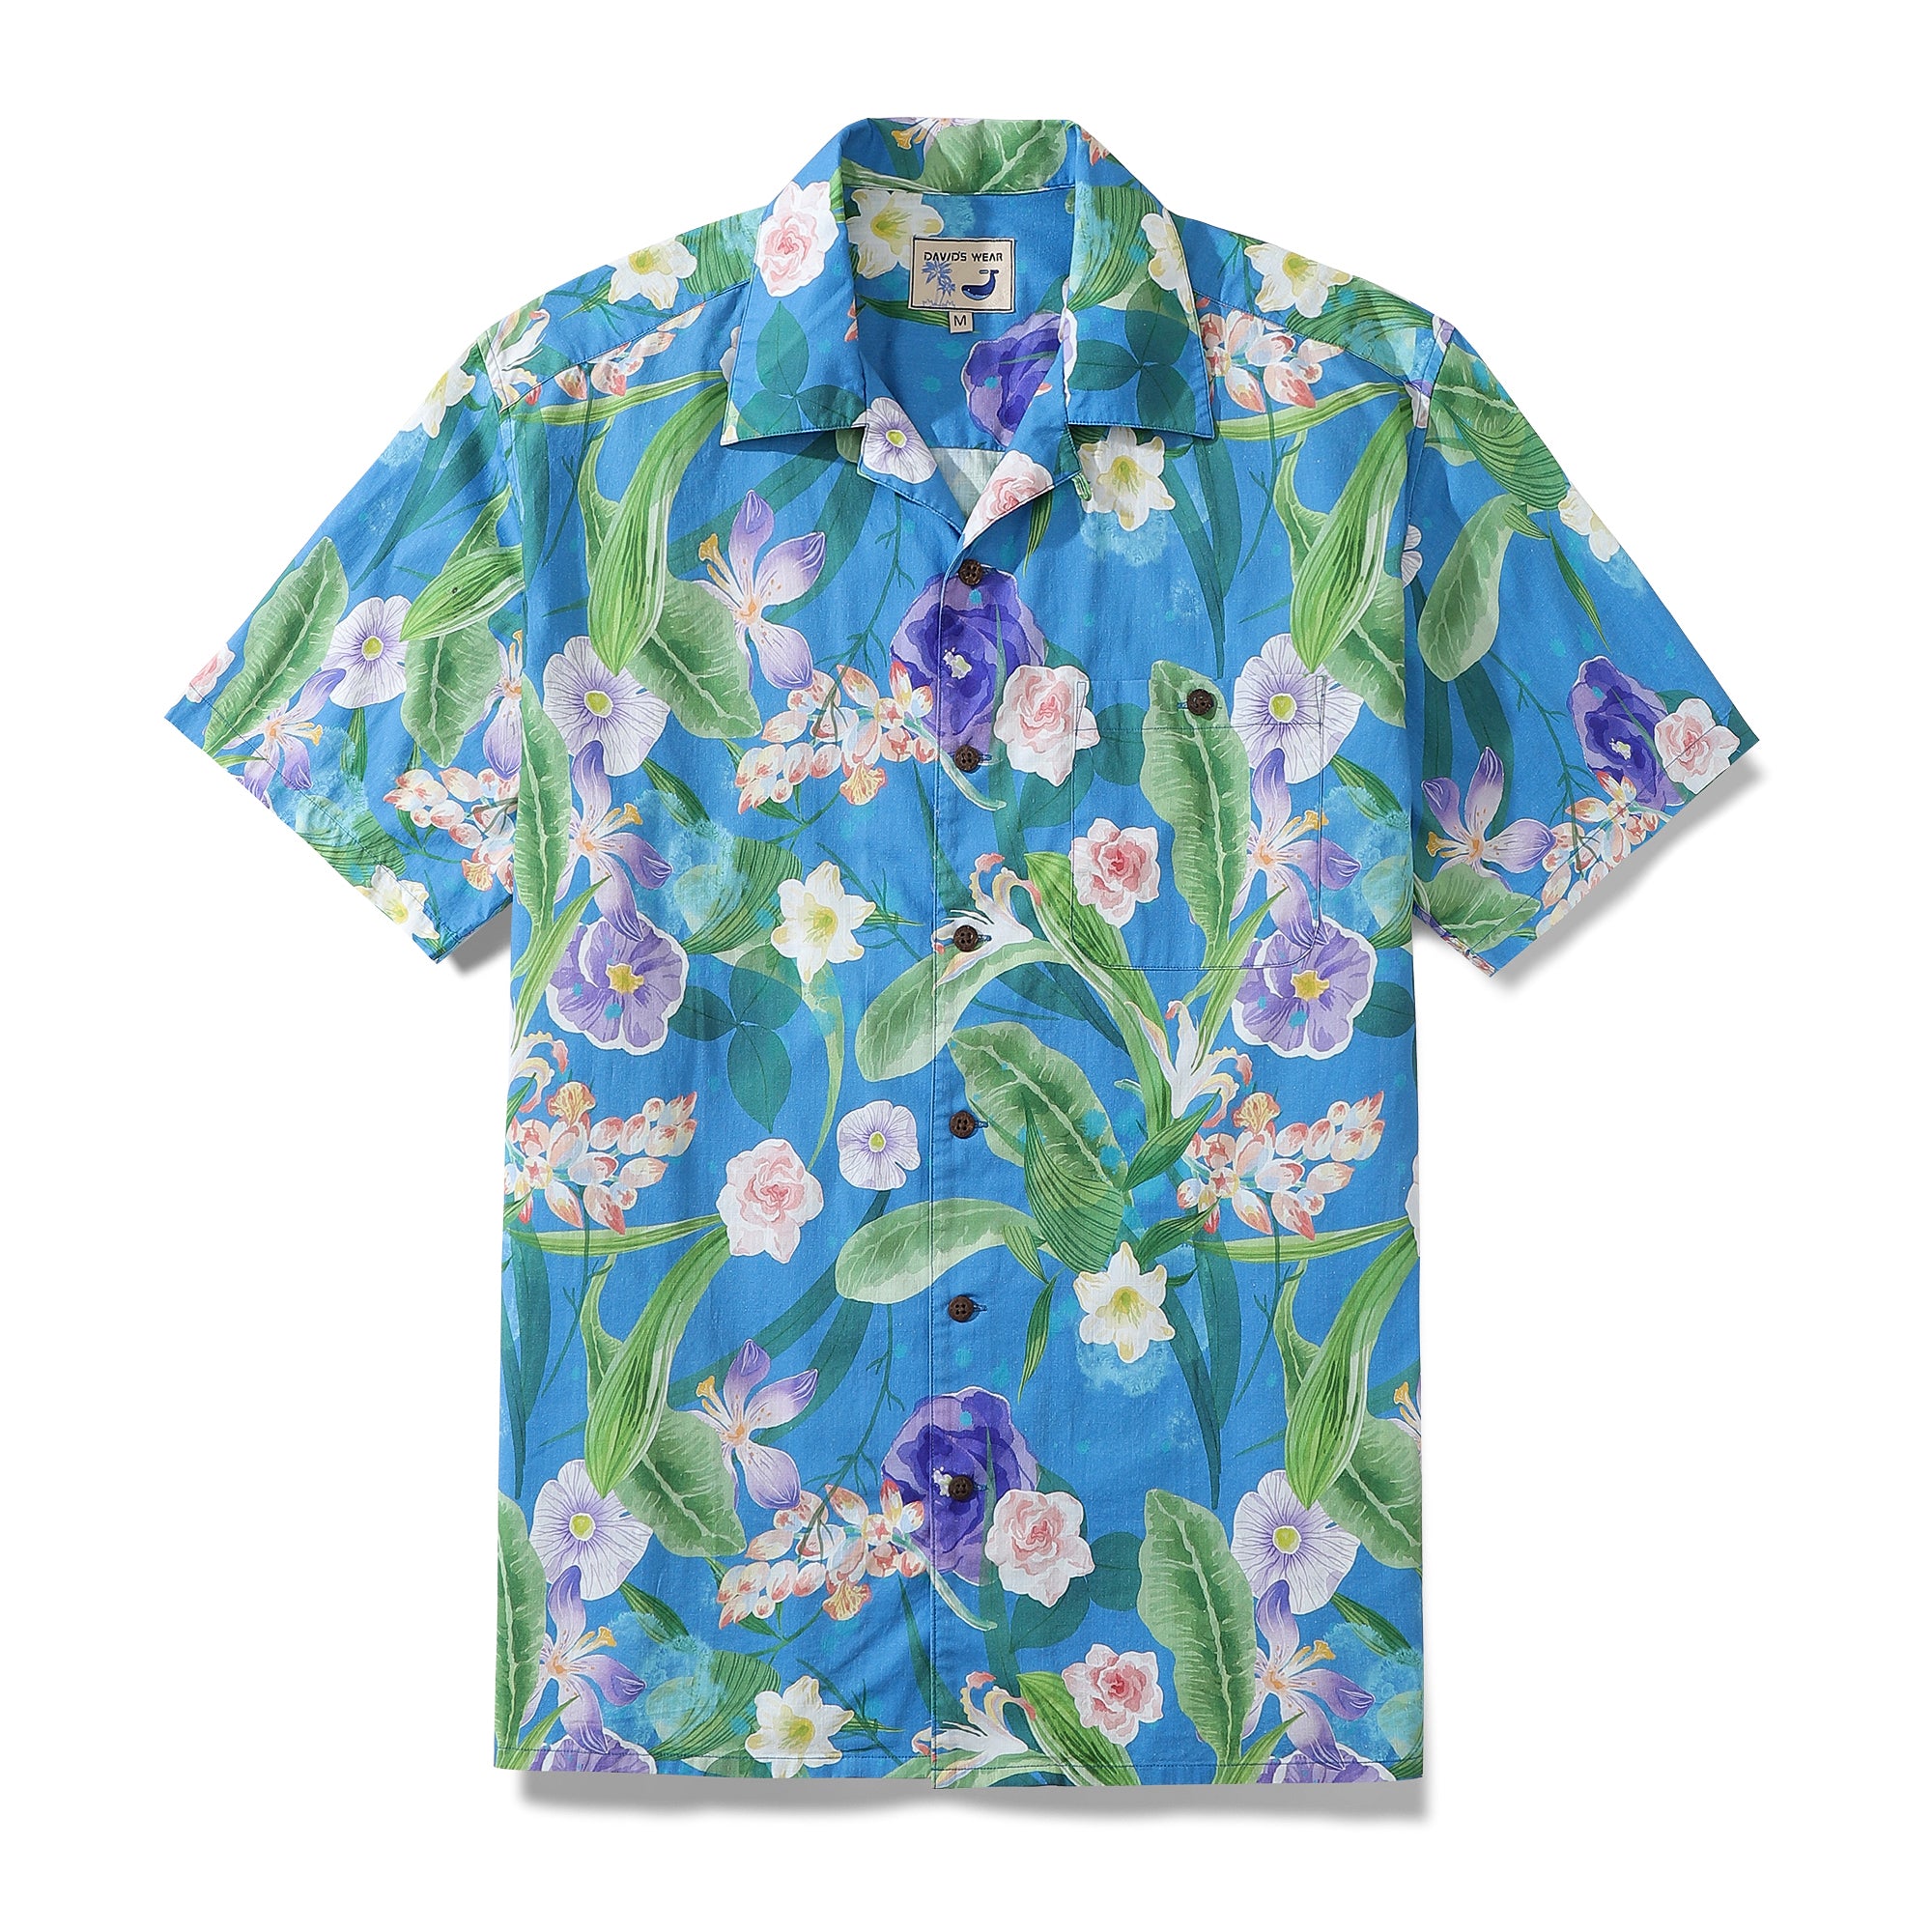 Men's Aloha Shirt Blue Tropical Floral Cotton Camp Collar Hawaiian Shirt